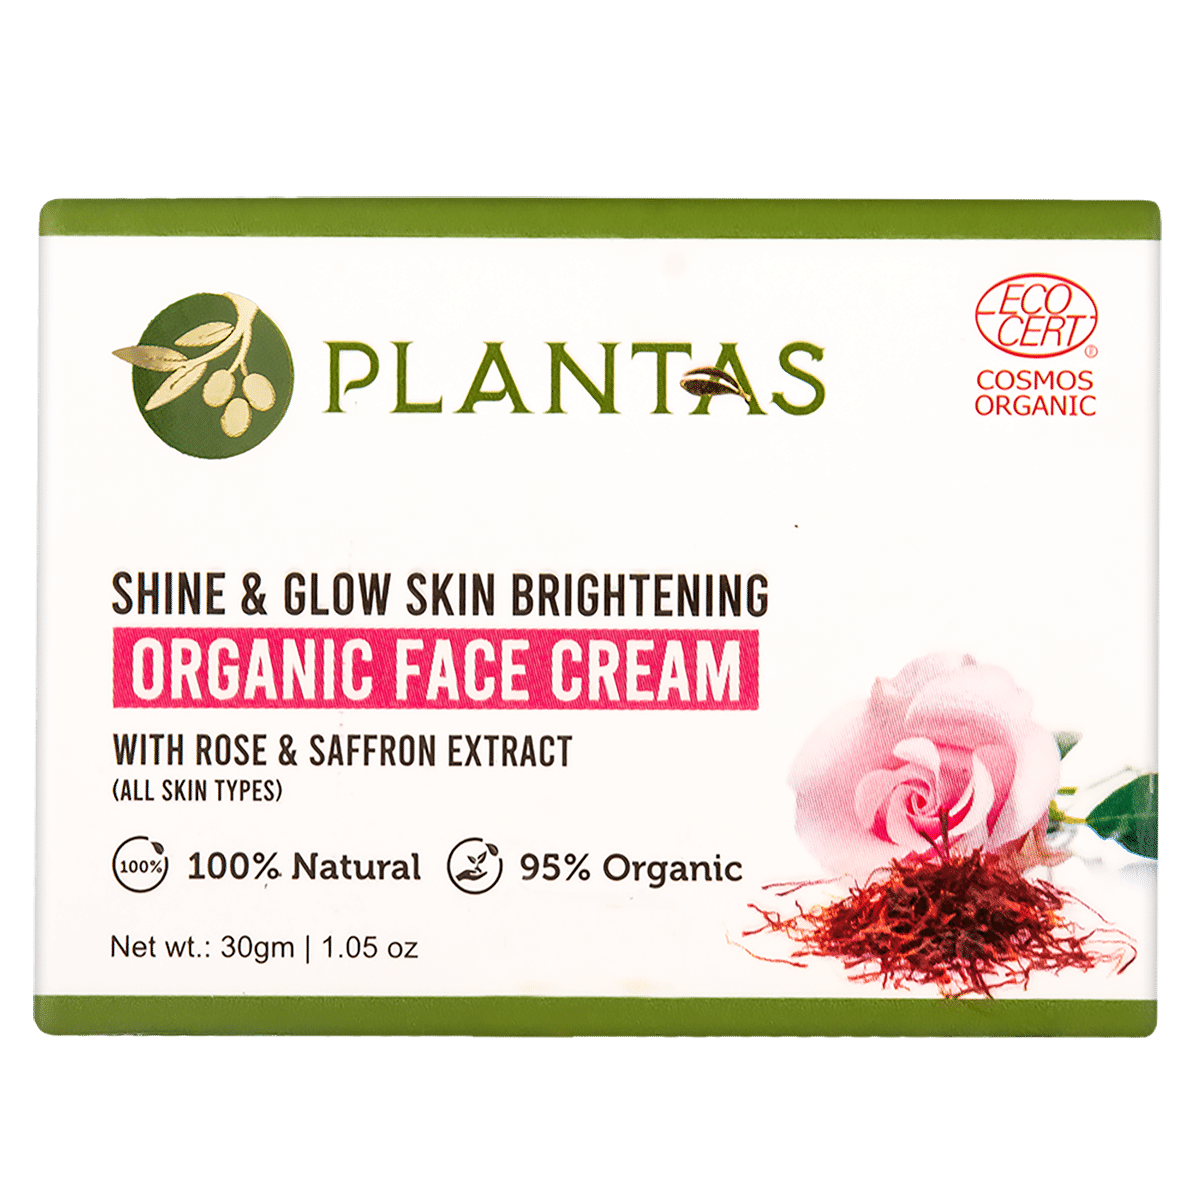 Buy Plantas Shine & Glow Skin Brightening Organic Face Cream - Purplle